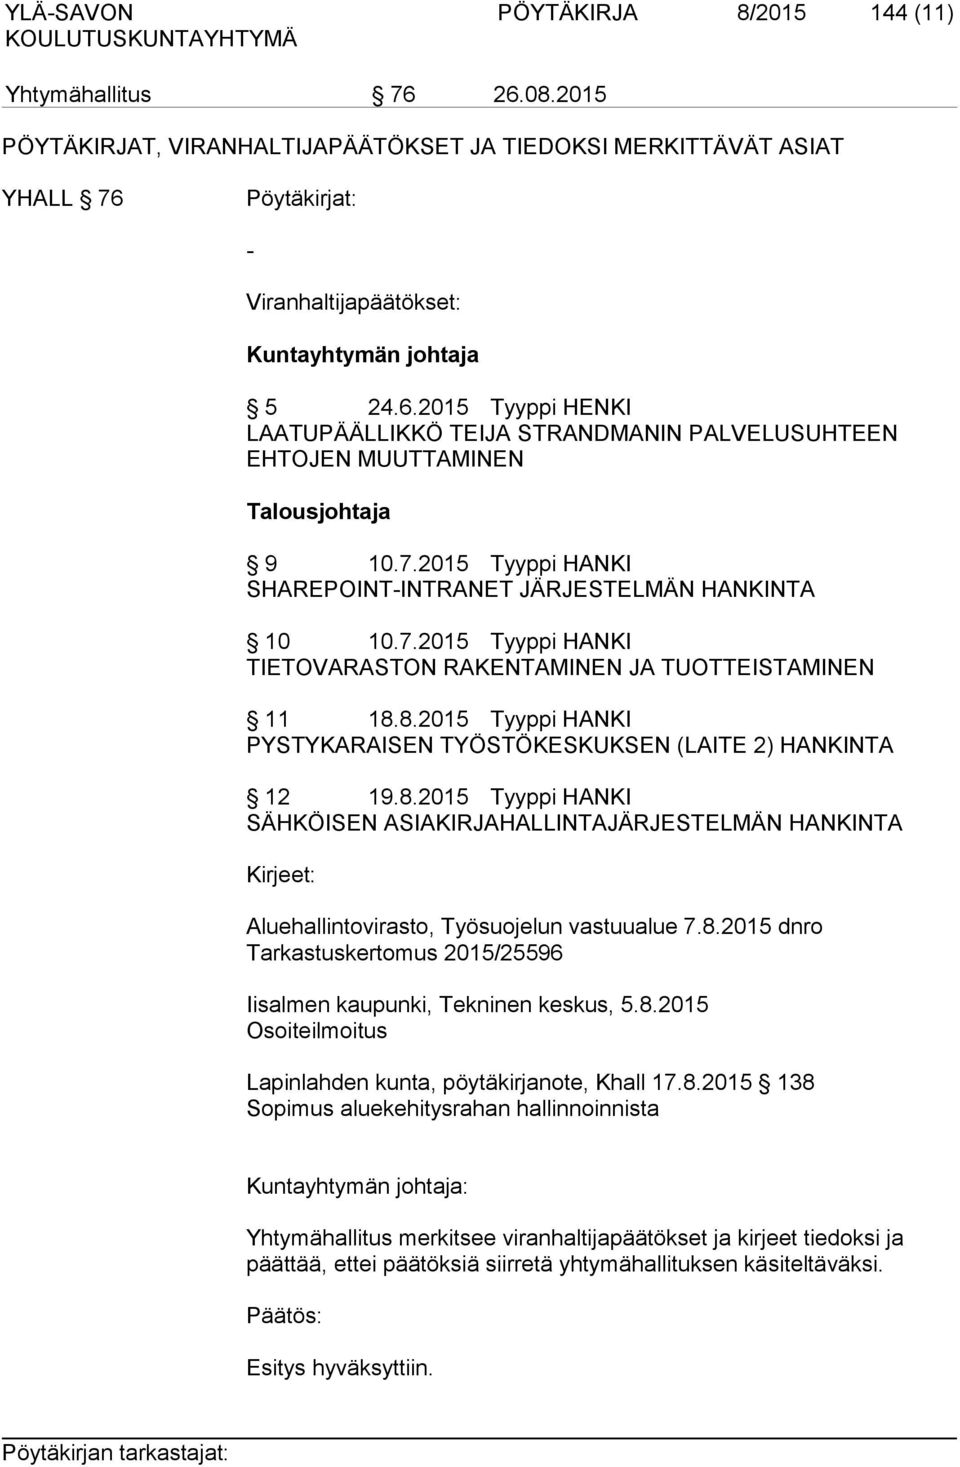 8.2015 Tyyppi HANKI PYSTYKARAISEN TYÖSTÖKESKUKSEN (LAITE 2) HANKINTA 12 19.8.2015 Tyyppi HANKI SÄHKÖISEN ASIAKIRJAHALLINTAJÄRJESTELMÄN HANKINTA Kirjeet: Aluehallintovirasto, Työsuojelun vastuualue 7.